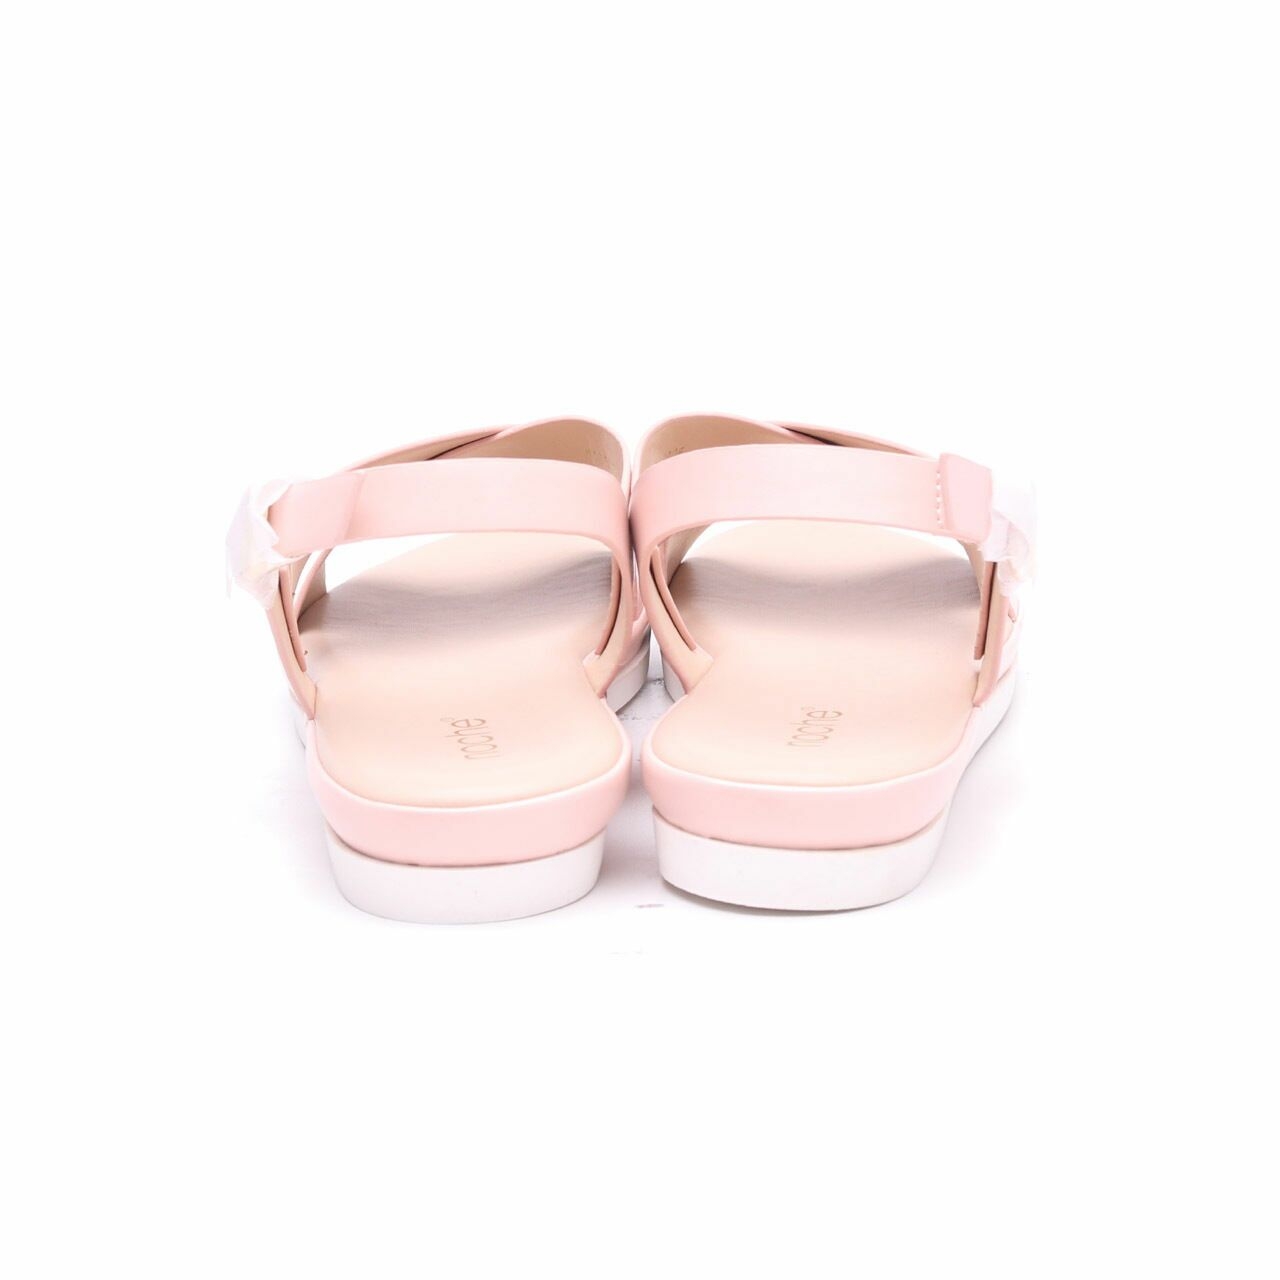 Noche Pink Mei Sandals